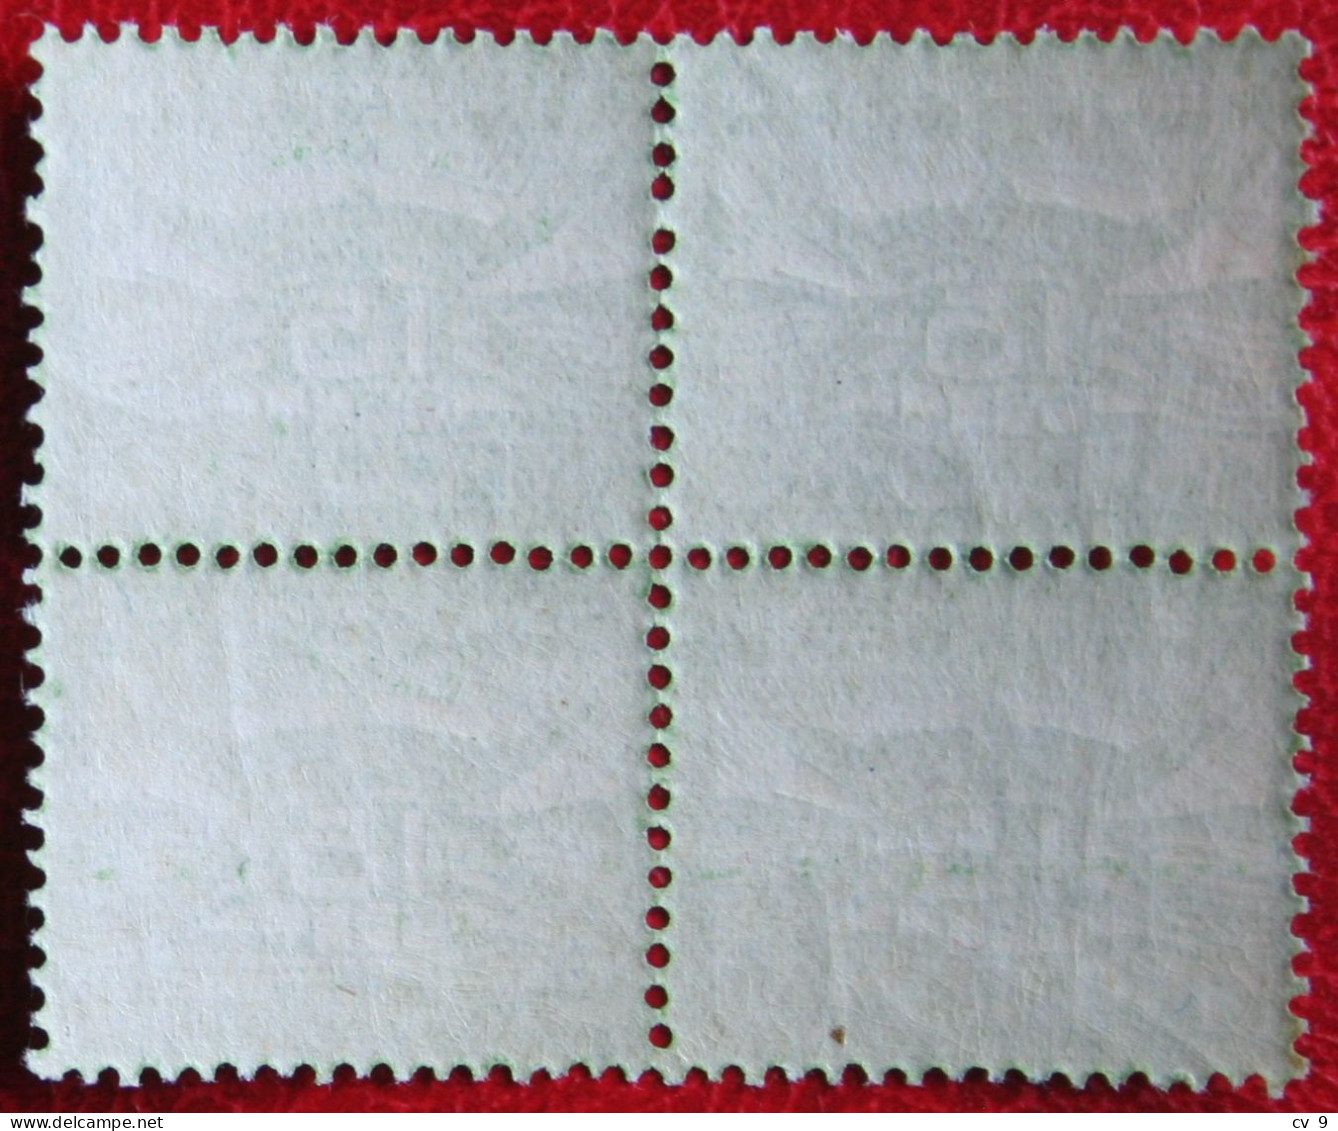 4x Block 15ct Luchtpostzegel Allegorische Voorstelling NVPH LP2 LP 2 (Mi 103) 1921 POSTFRIS MNH ** NEDERLAND NIEDERLANDE - Poste Aérienne